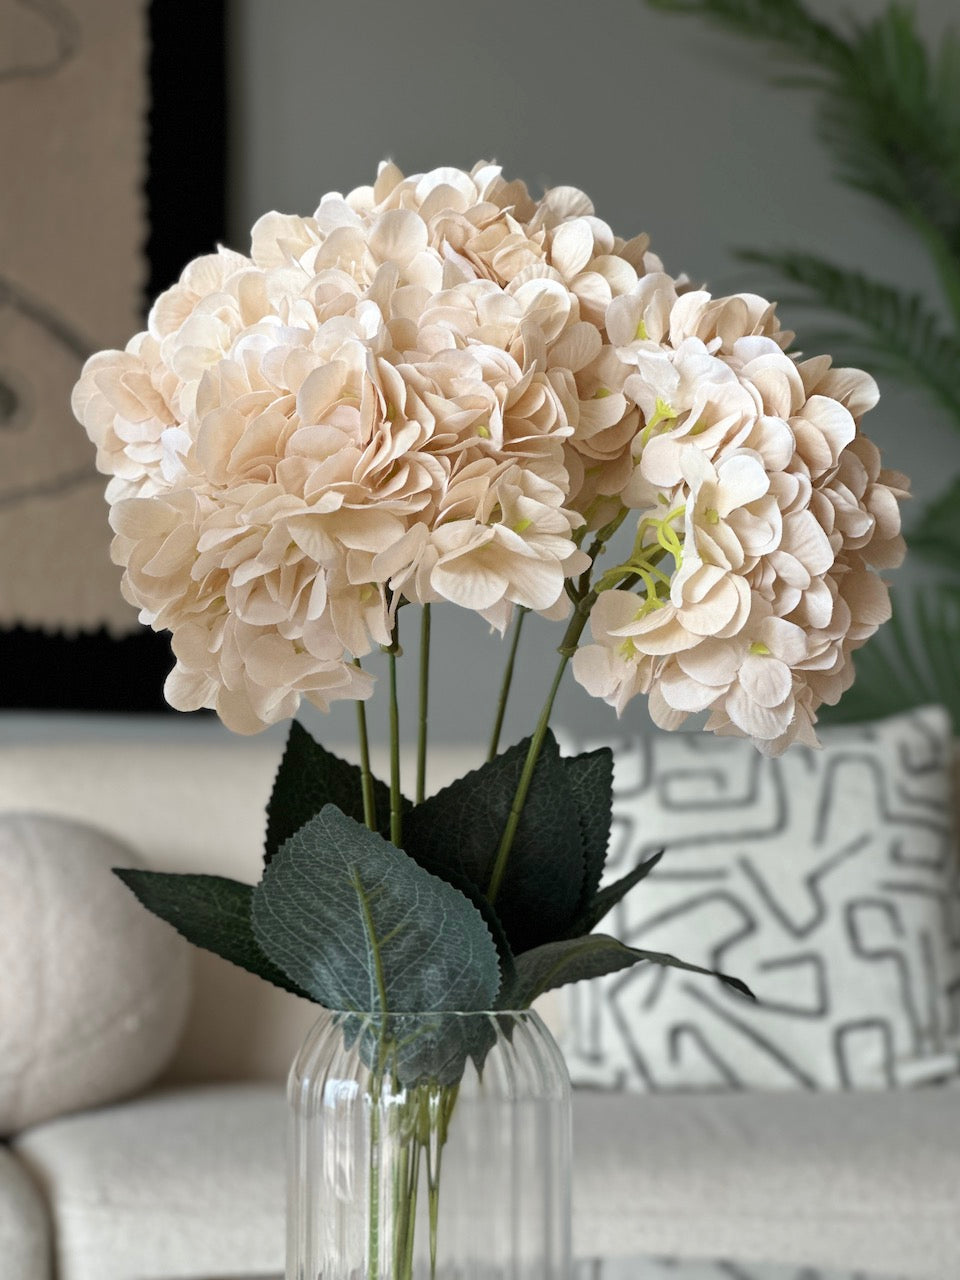 Hydrangea Bouquet - White